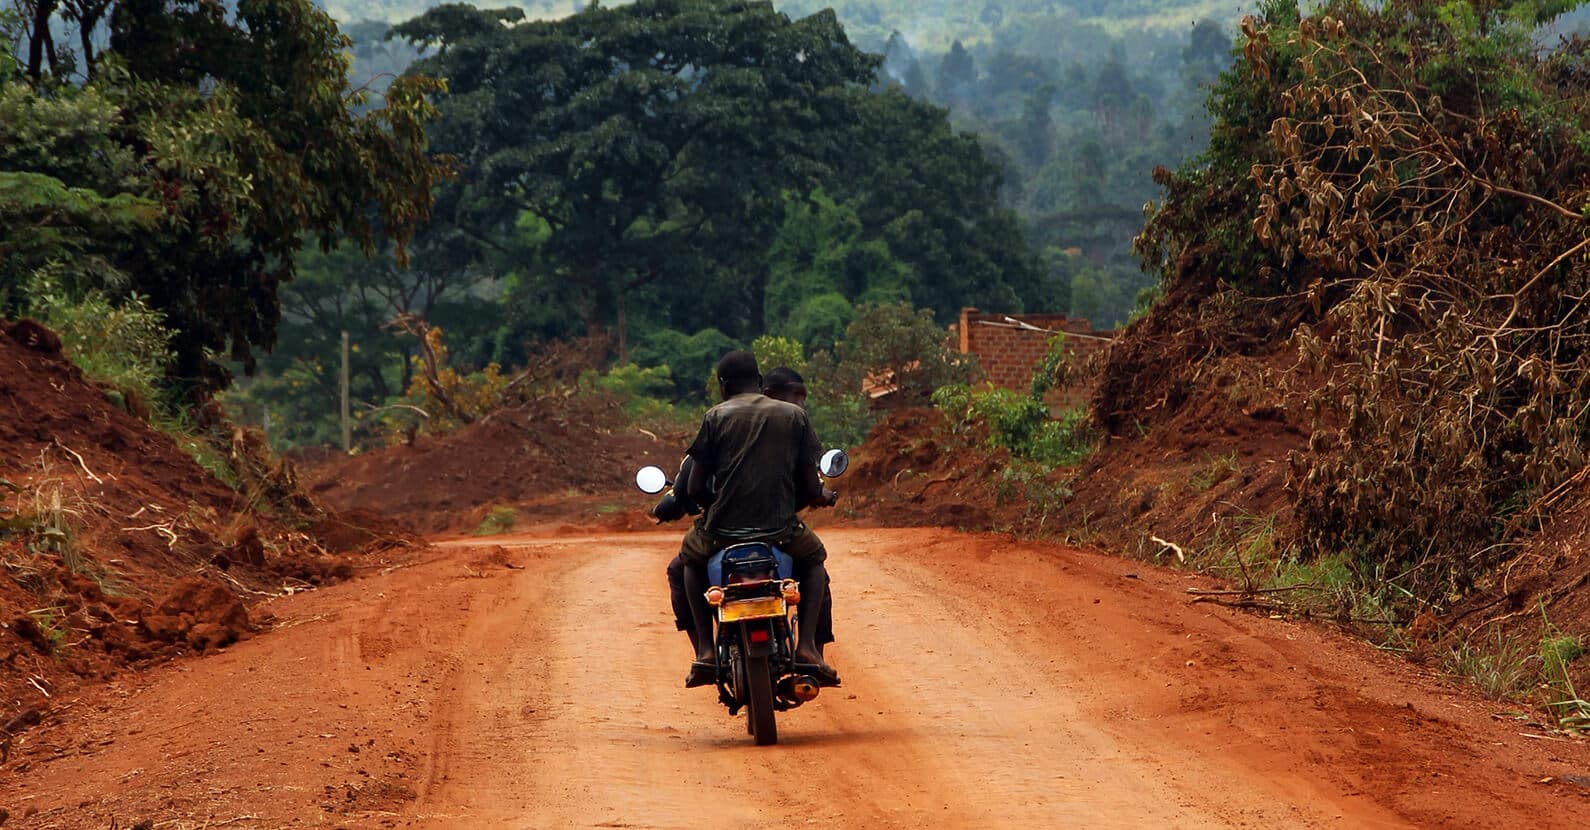 Boda bodas ride through the village streets of Uganda.